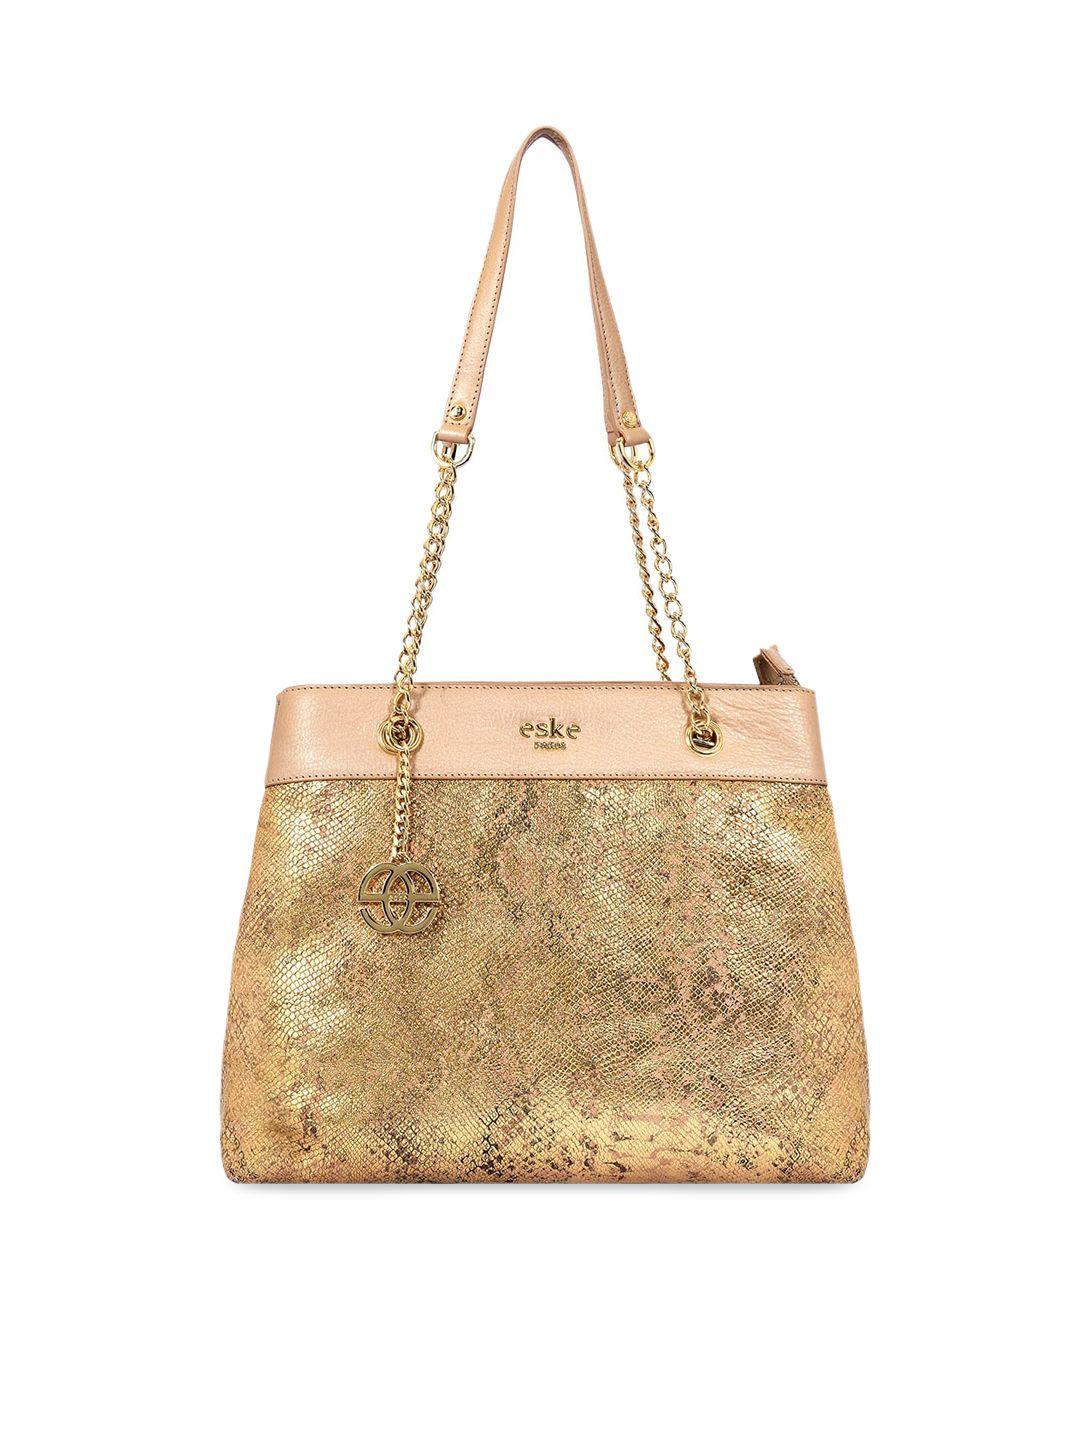 eske gold-toned textured leather structured shoulder bag